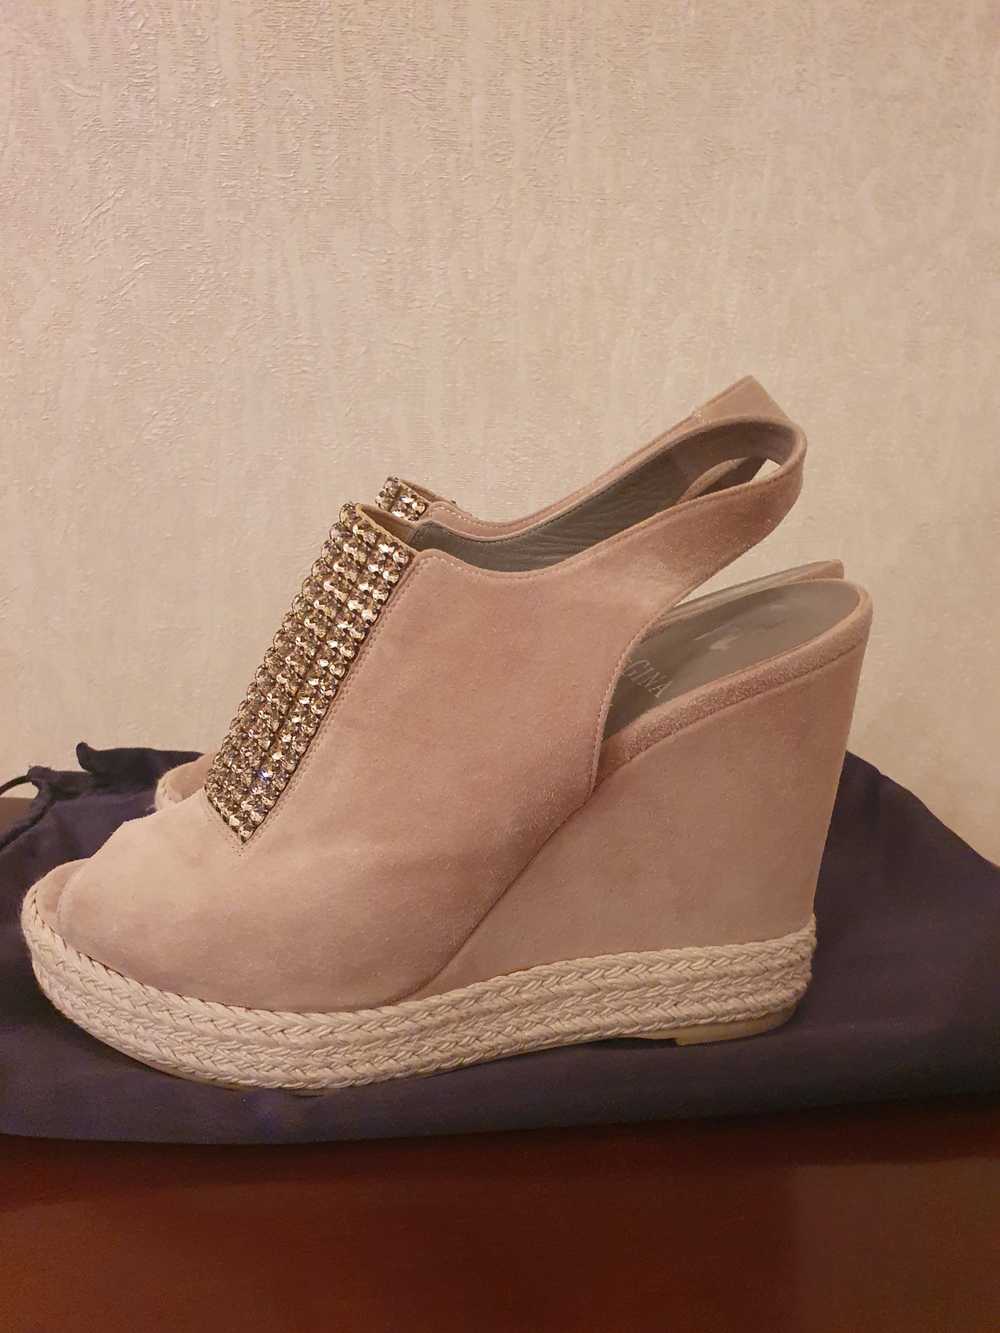 Gina Gina Suede Crystal Embellished Wedge Sandals - image 2